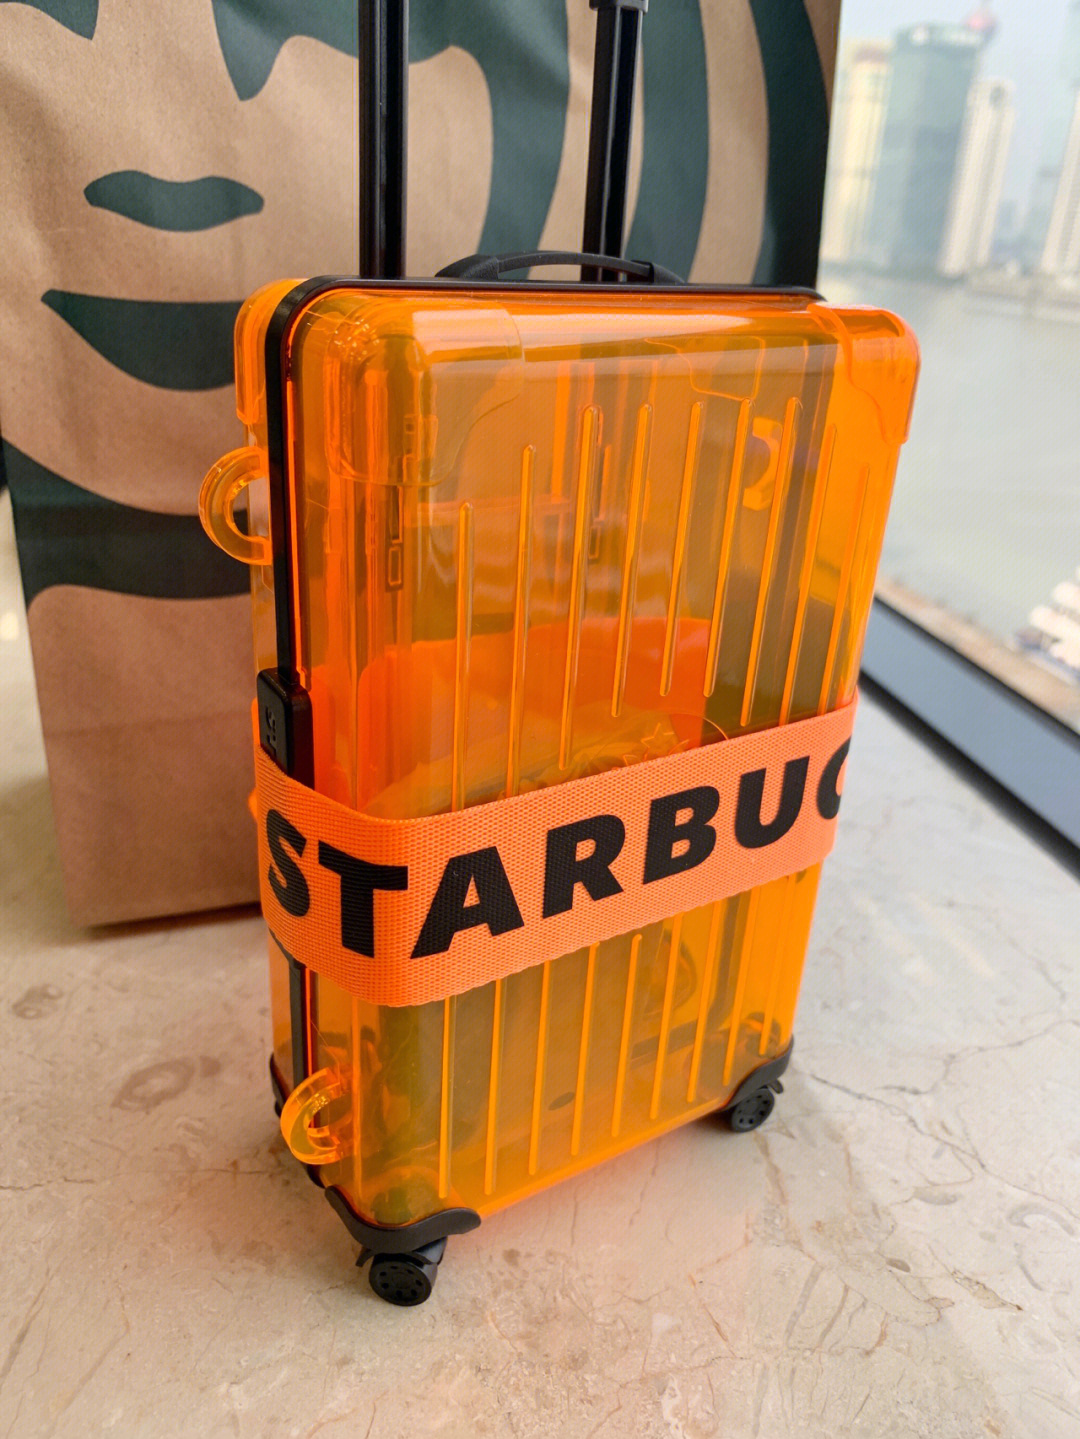 出的星礼包,mini行李箱,有四种颜色07128元,都是透明款,挑选了橙色